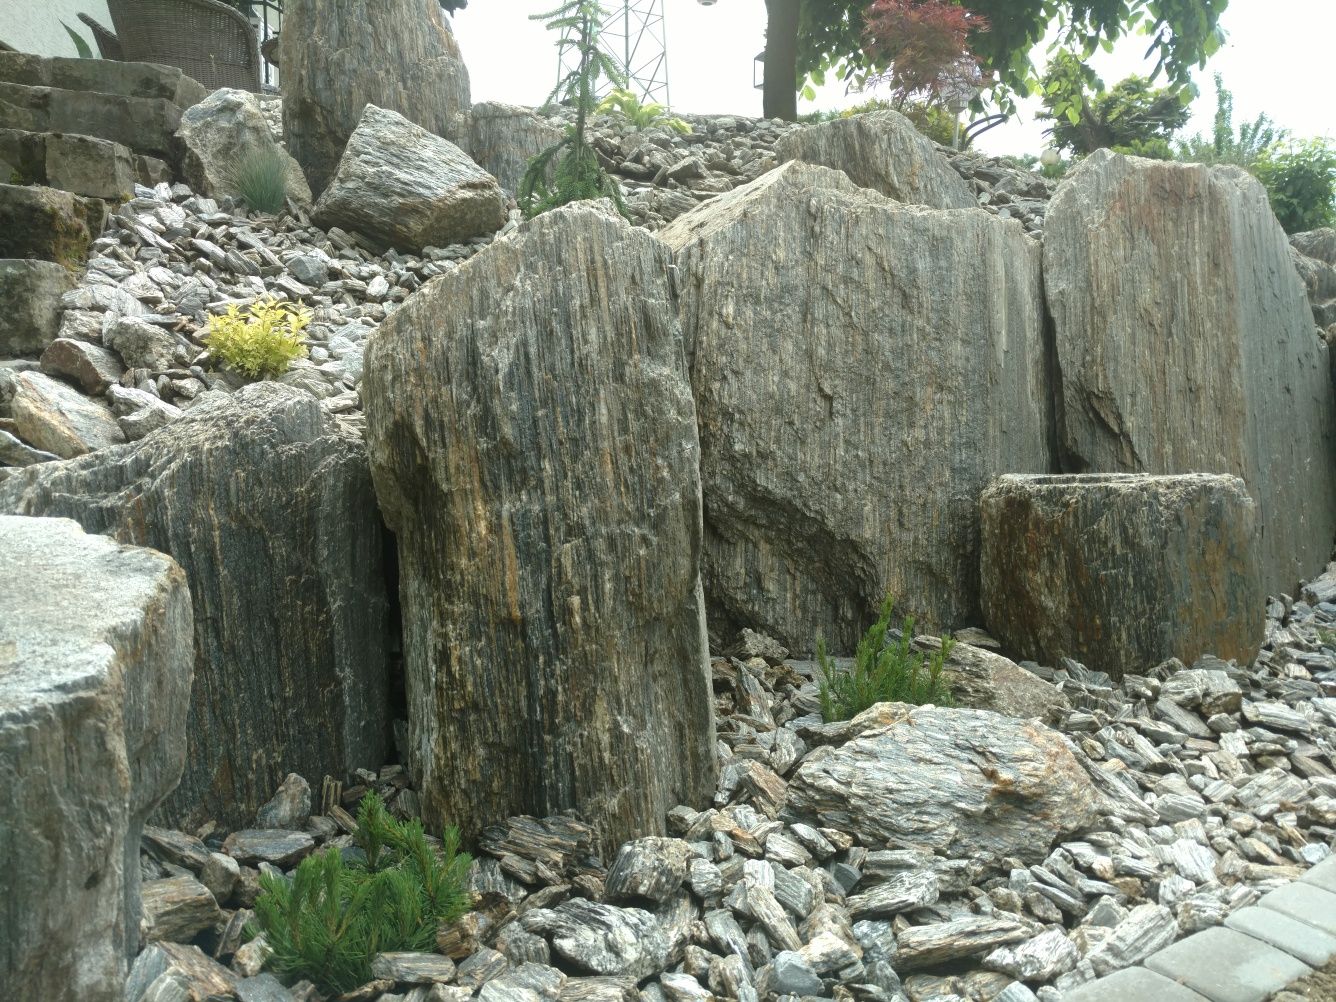 kora kamienna ogrodowa sosnowa kostka brukowa granitowa ziemia granit